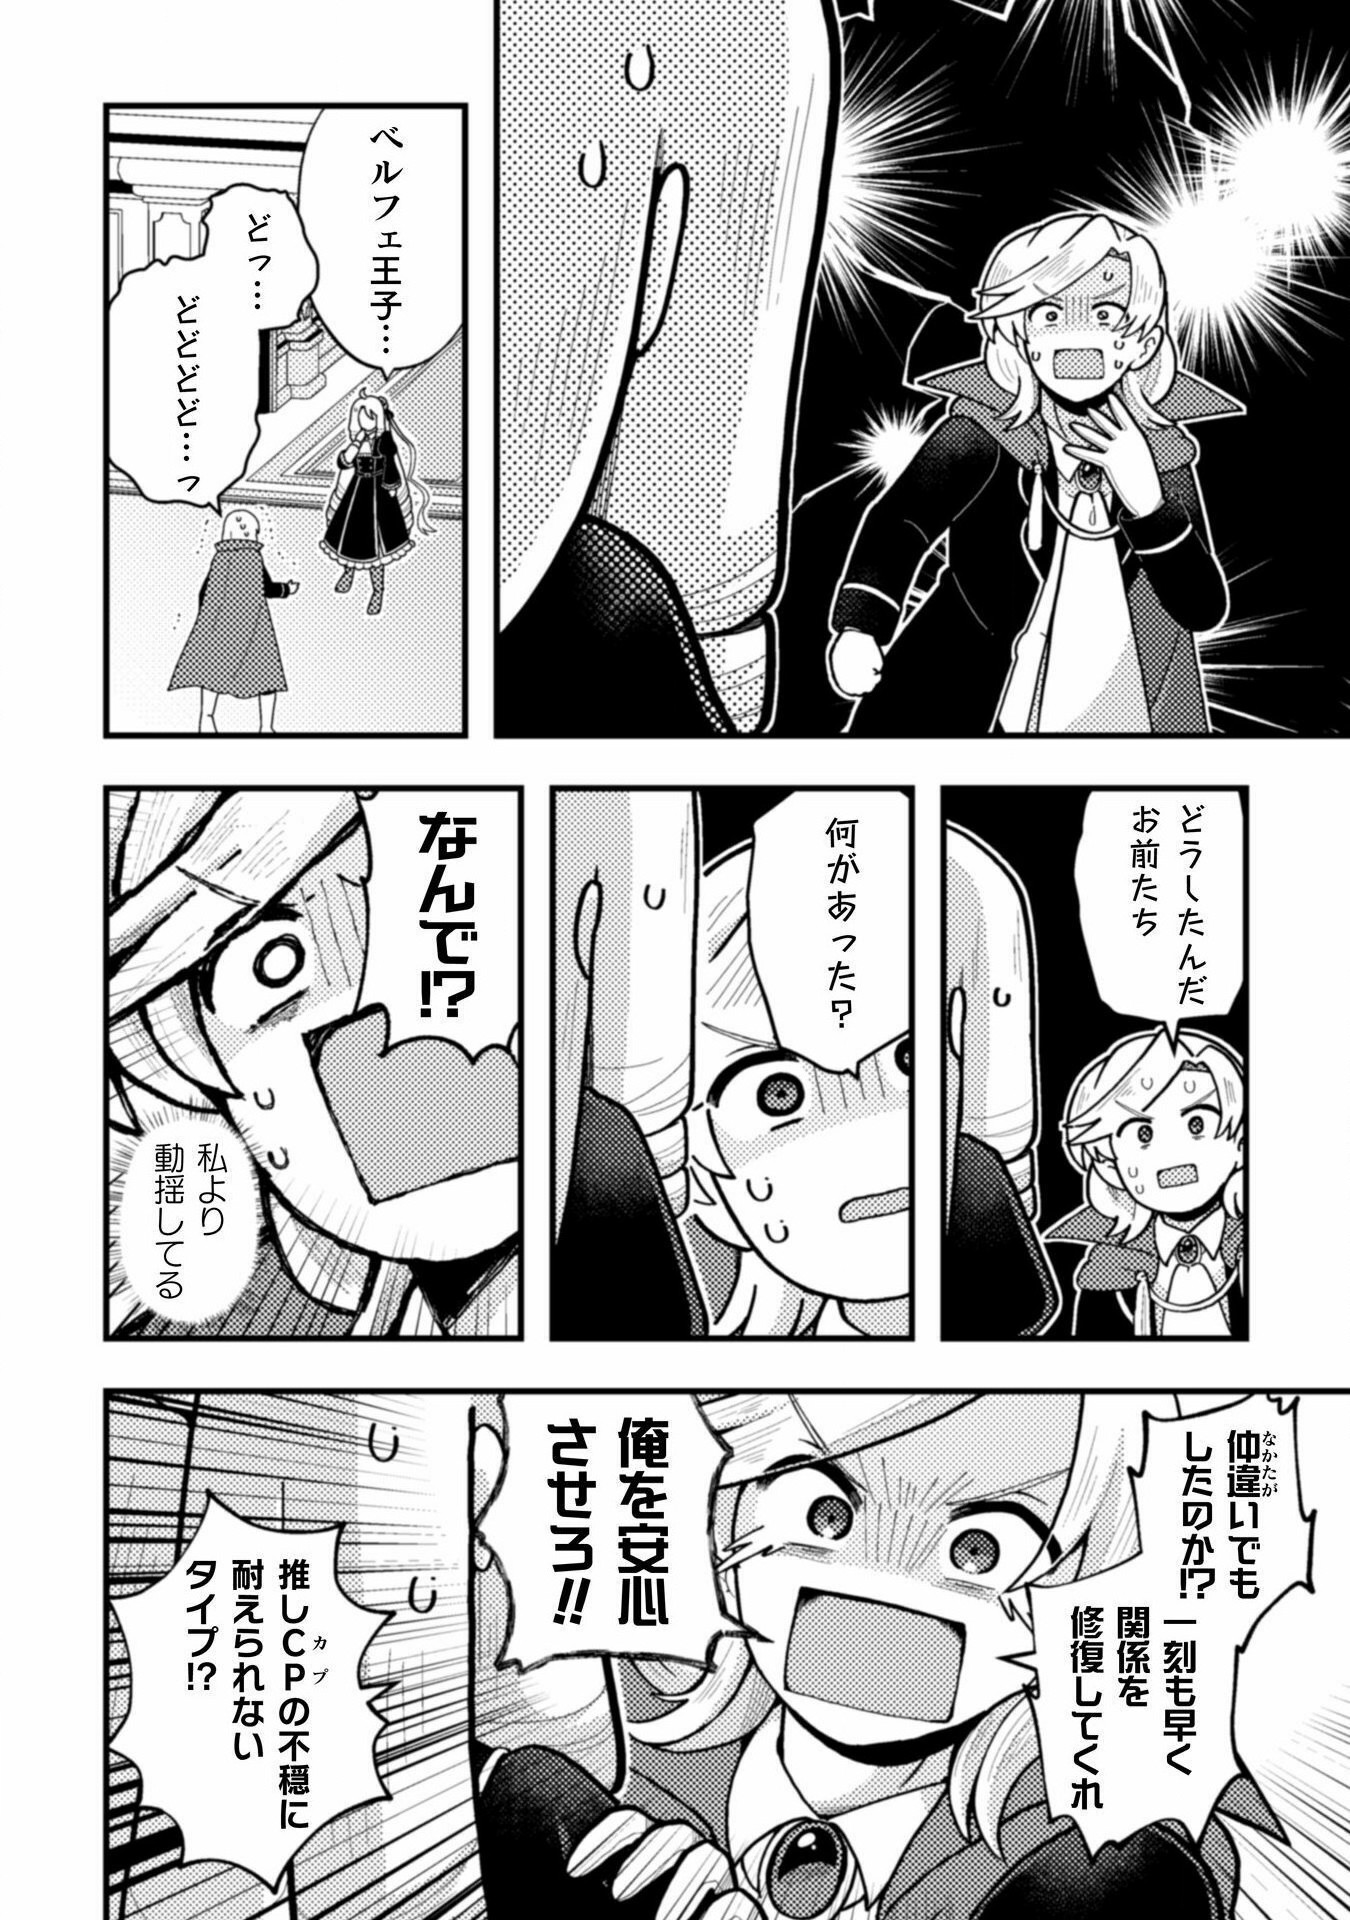 Otome Game no Akuyaku Reijou ni Tensei shitakedo Follower ga Fukyoushiteta Chisiki shikanai - Chapter 21 - Page 14